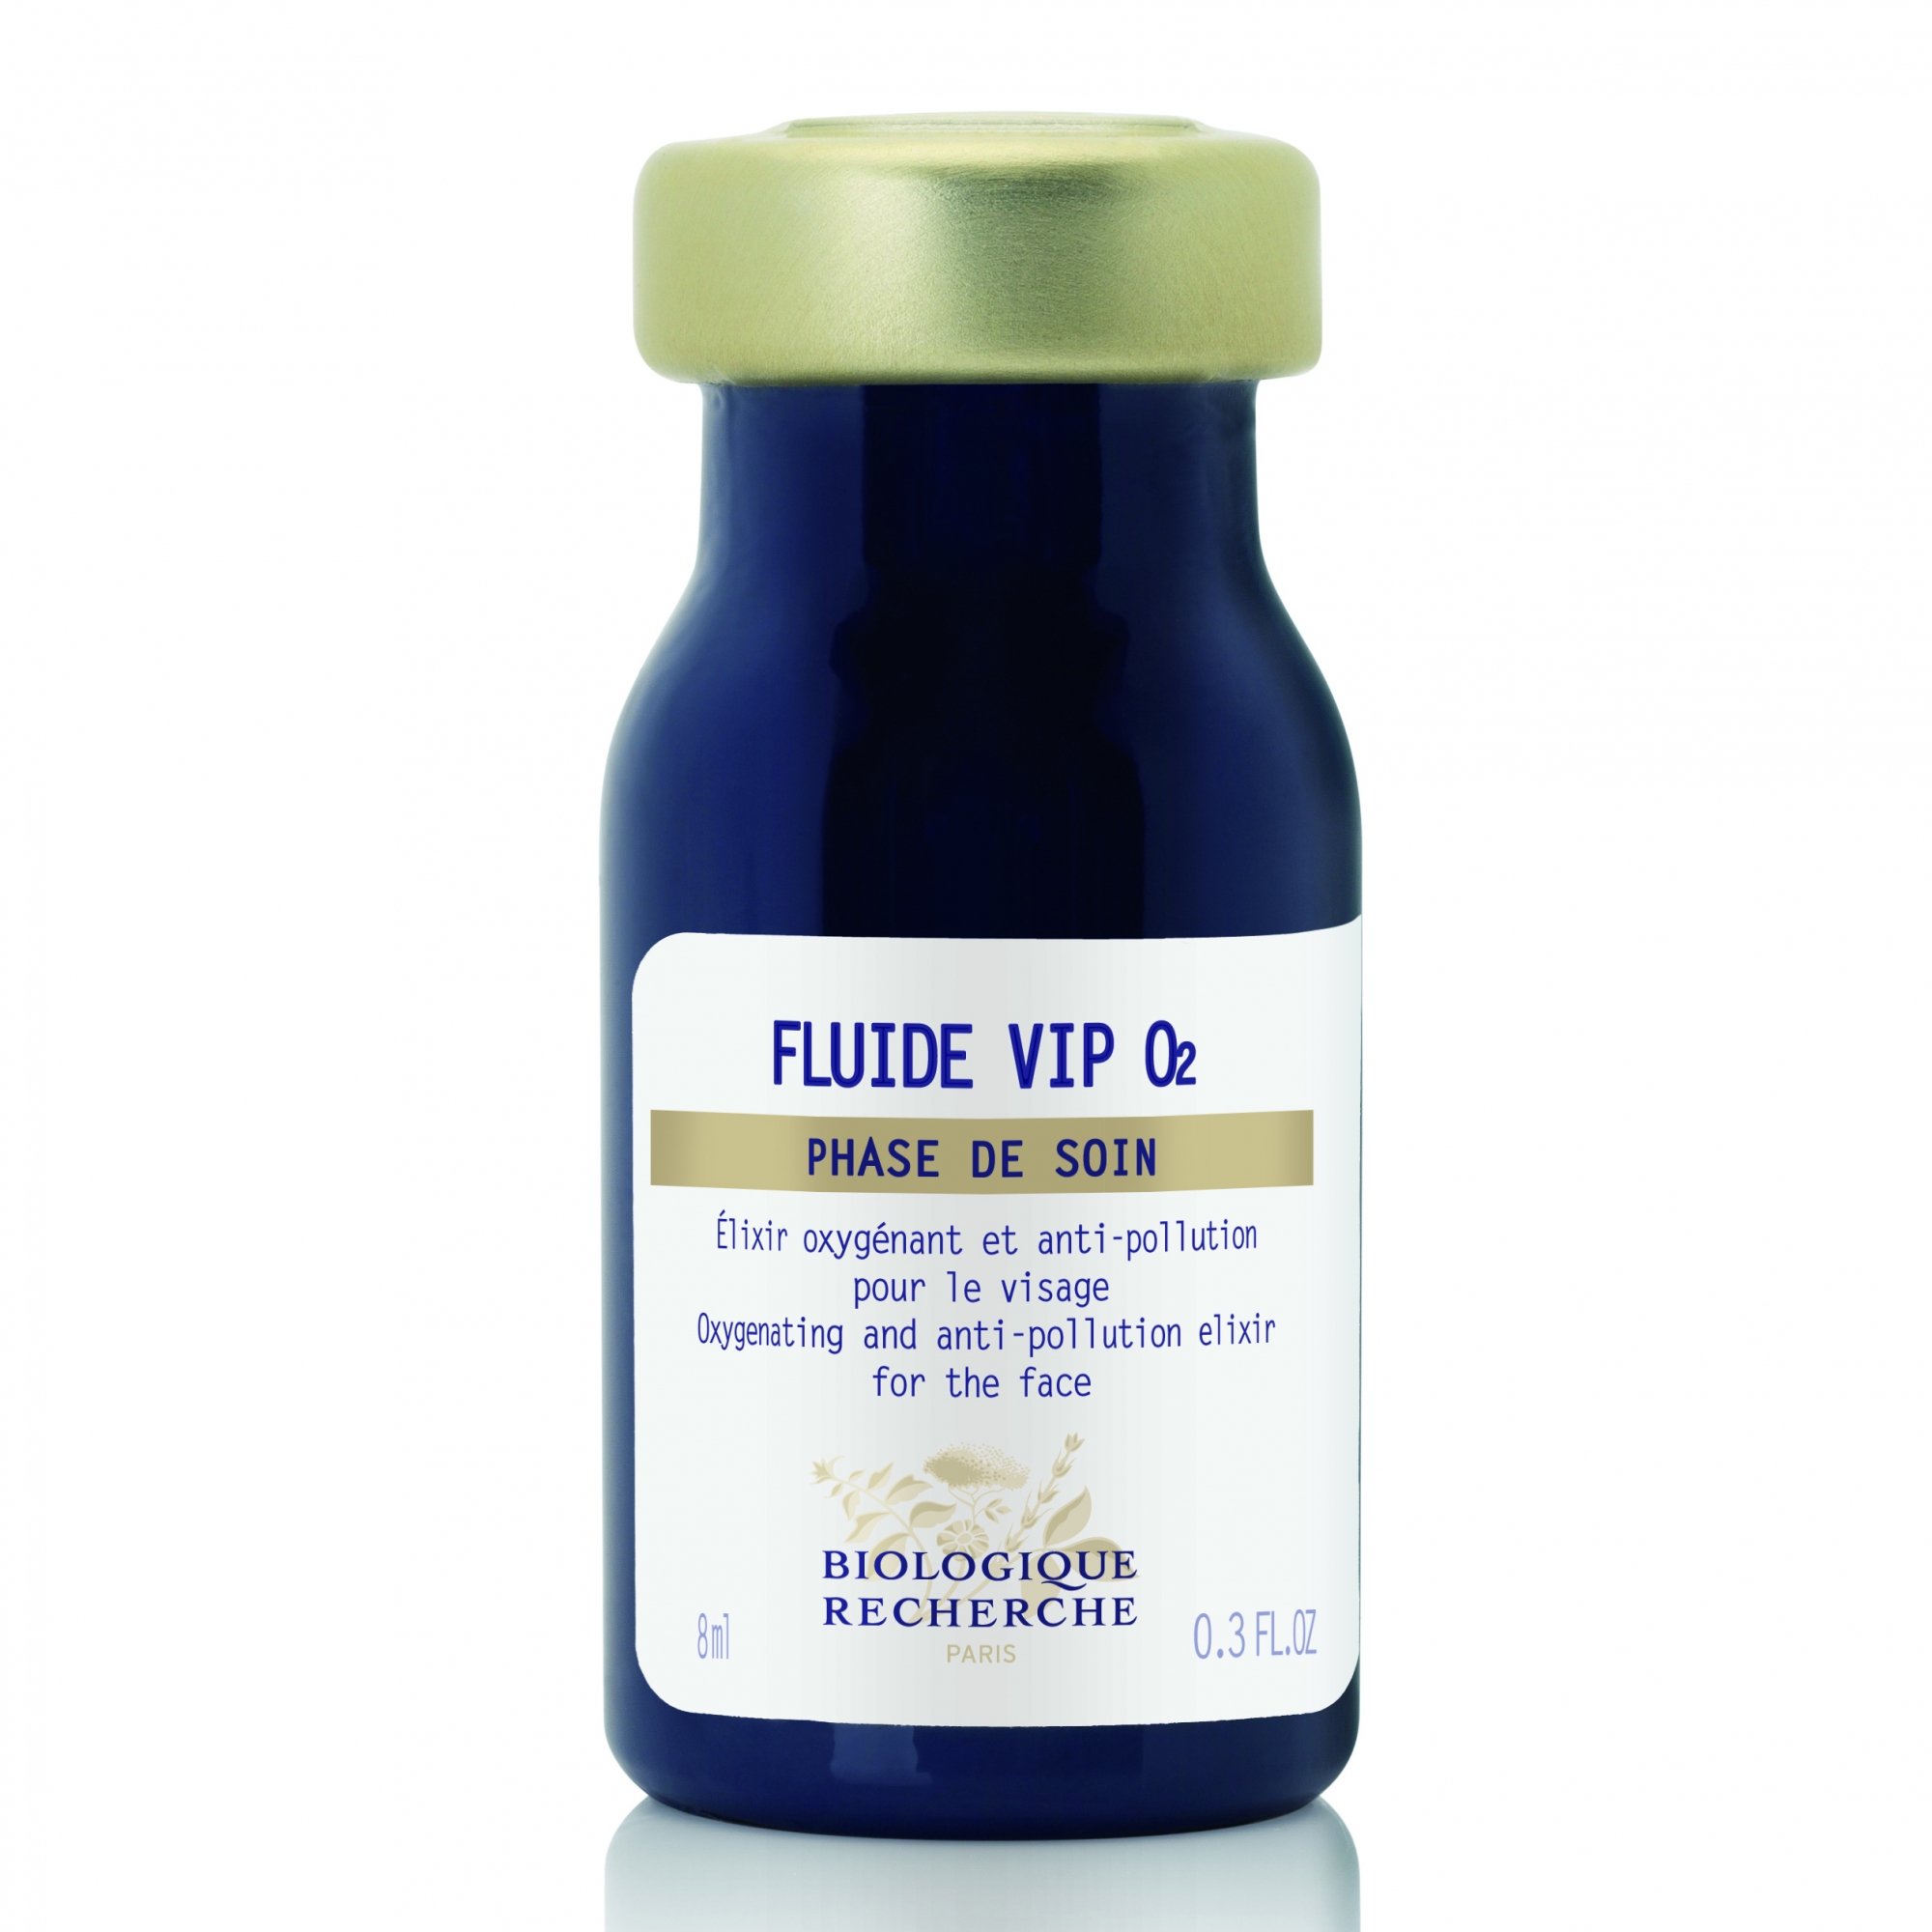 Fluid Serum VIP 02, Biological Research, 58 € 8ml